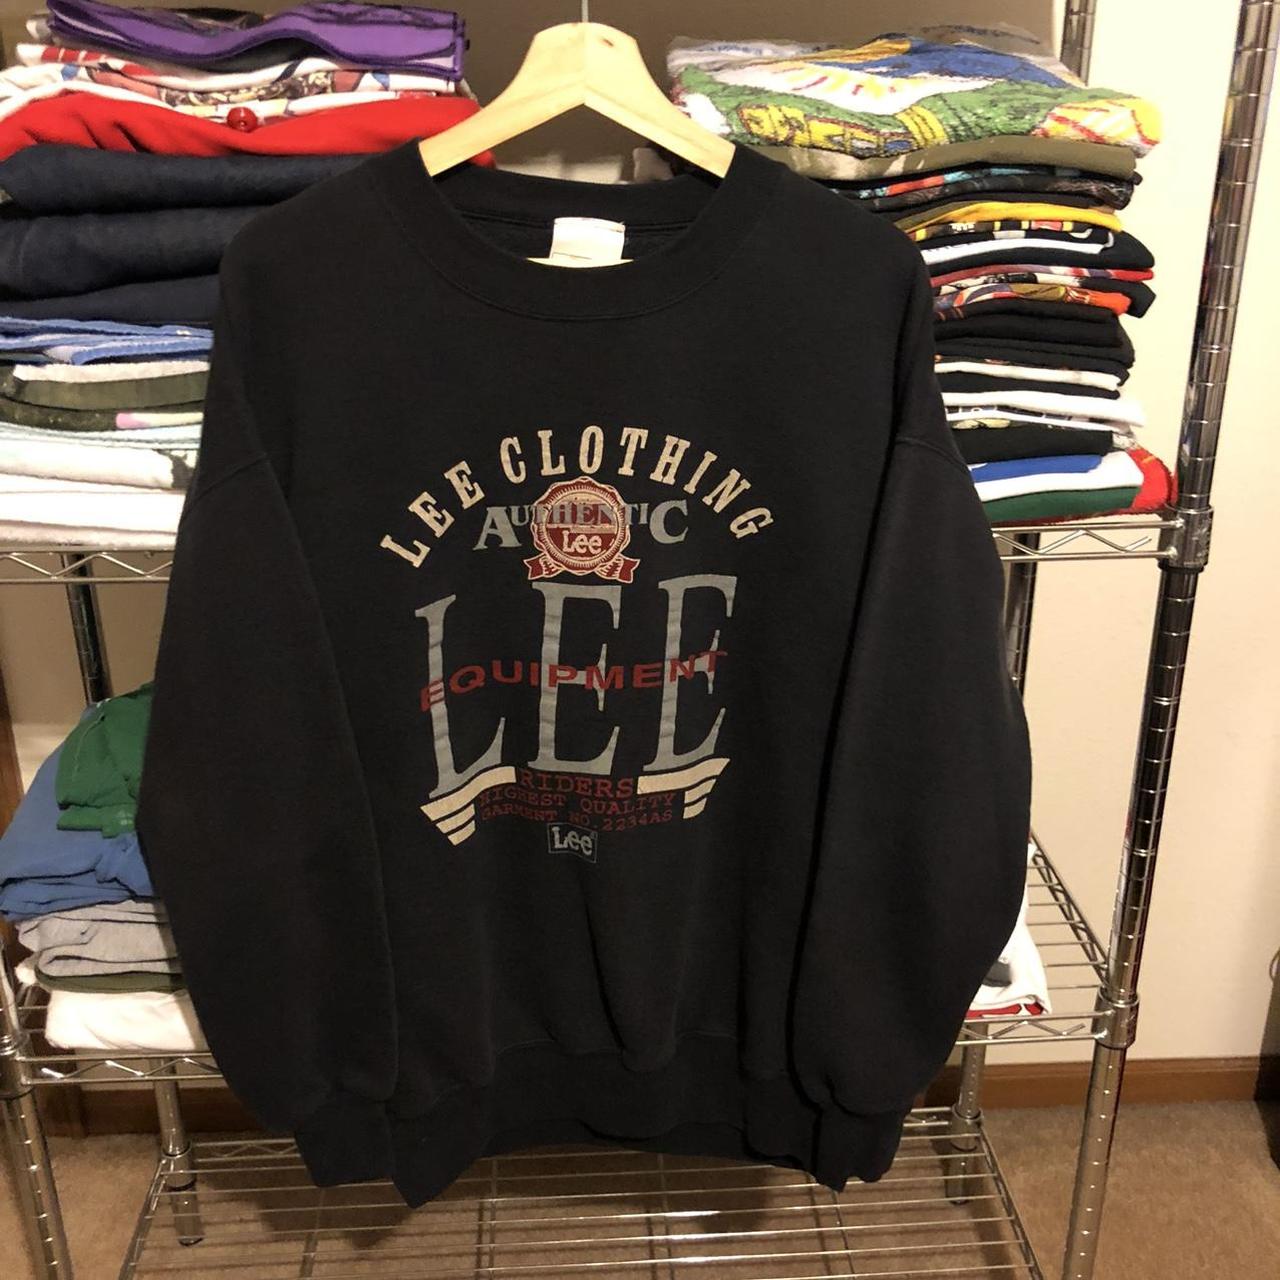 Lee Men's Sweatshirt - Black - XXL